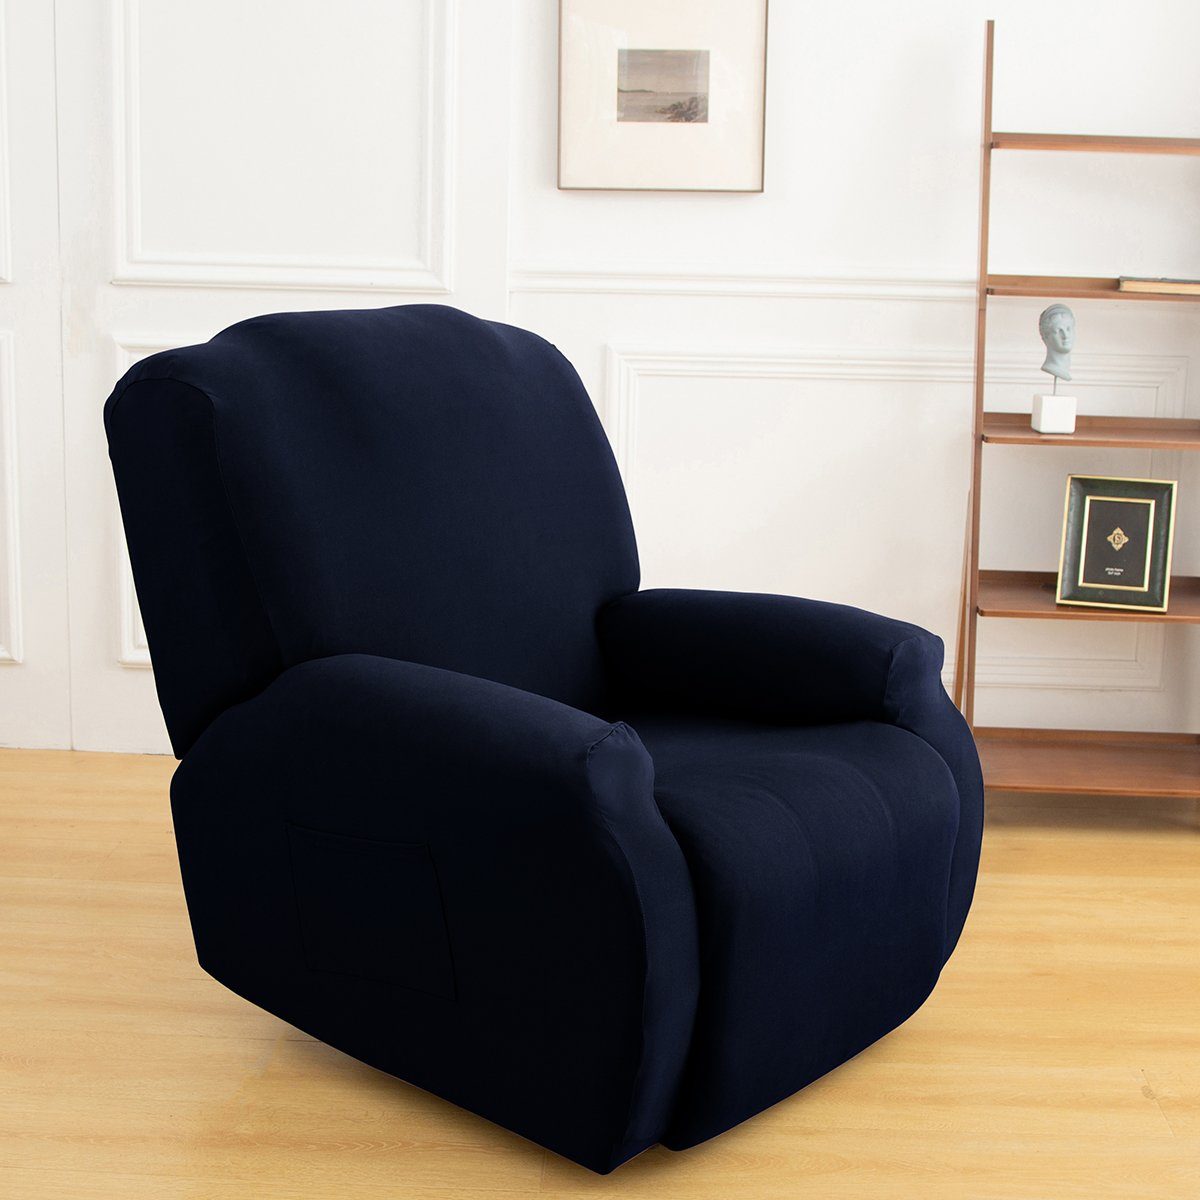 Möbelschutz Qelus, Sesselschoner Schutz, Stuhlbezug Liegesessel für Bezug Sesselhusse Blau